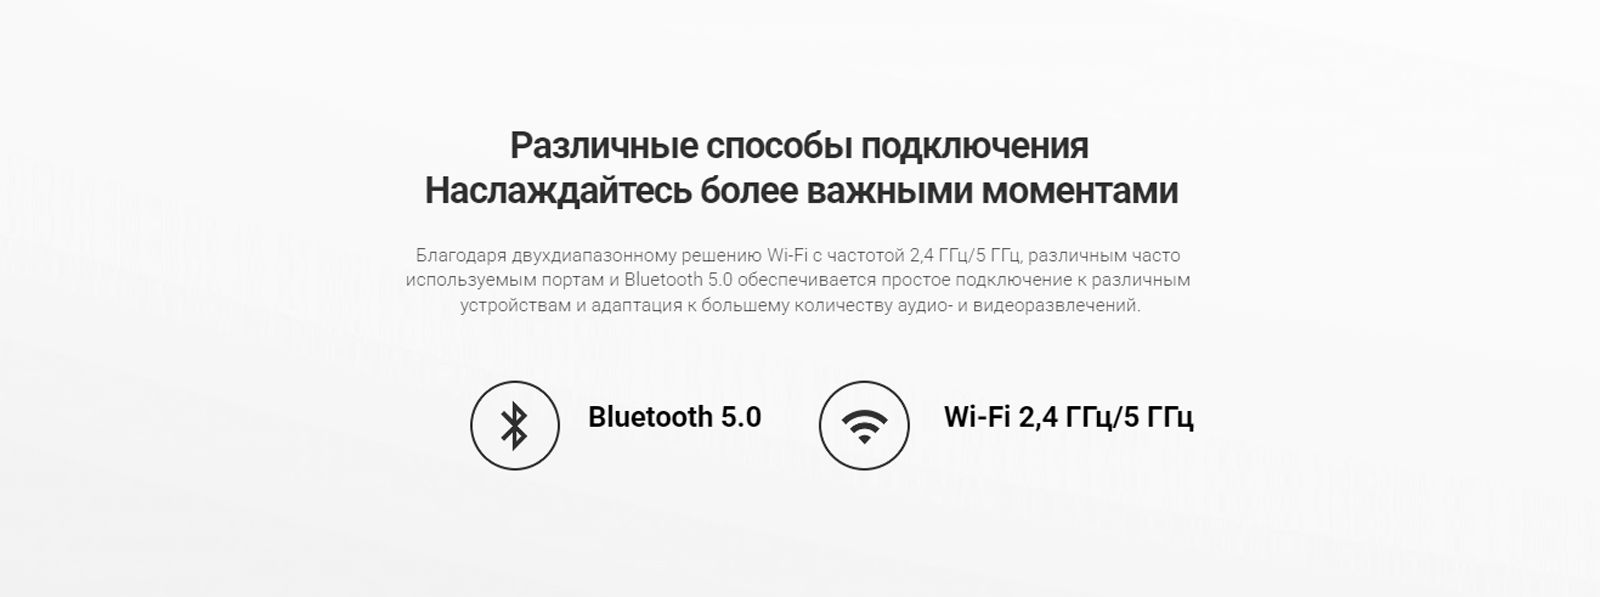 Возможность подключения через Wi-Fi и Bluetooth.